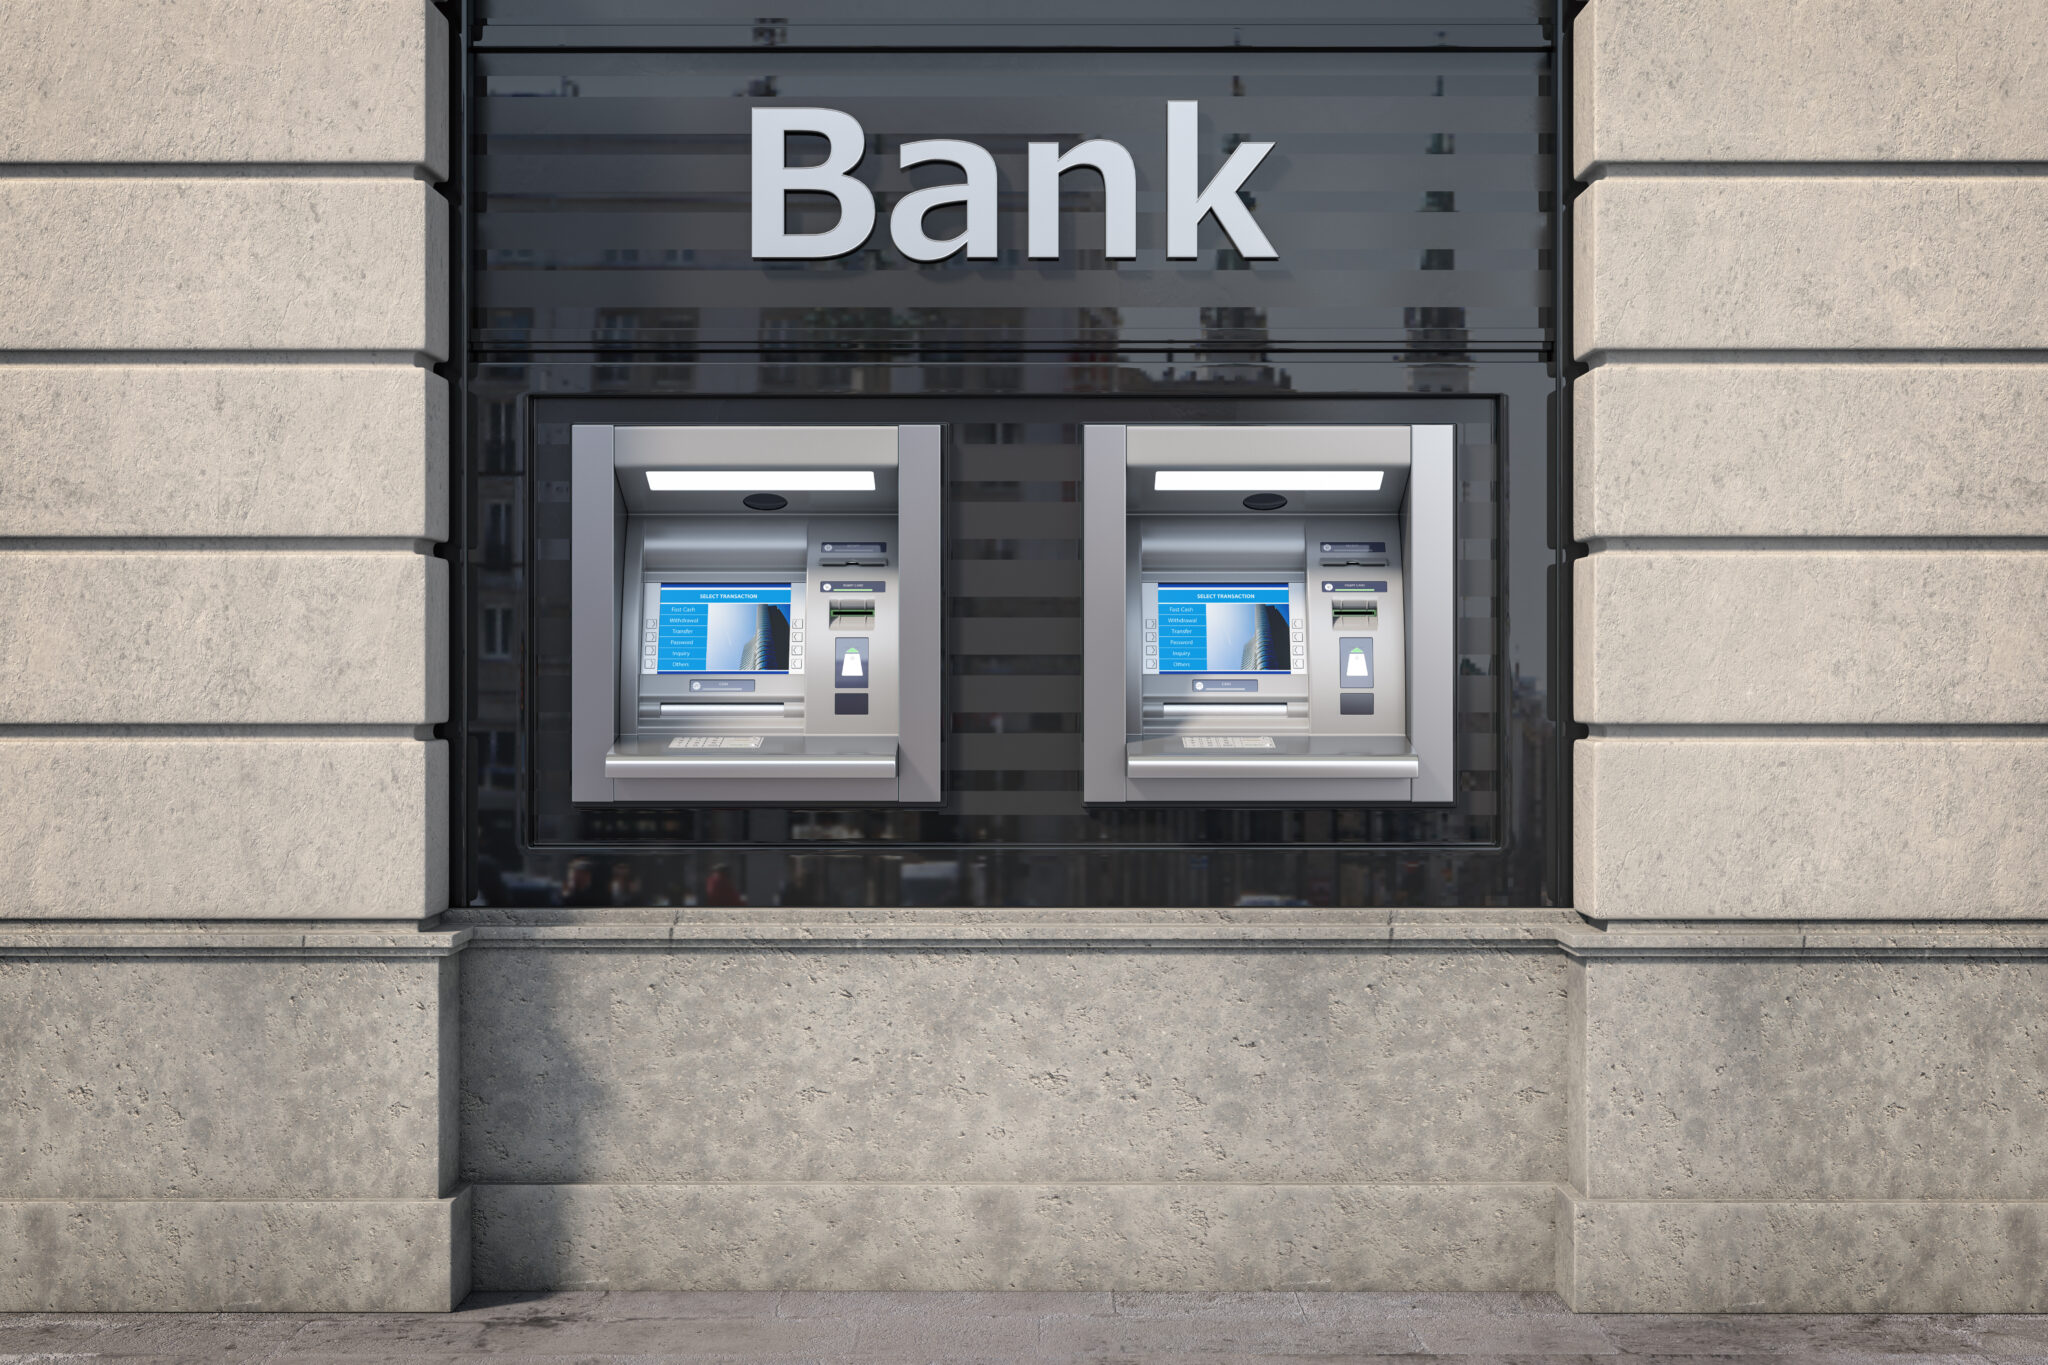 Edificio de banco tradicional con cajero automático en contraste con los mejores neobancos y nuevos bancos digitales